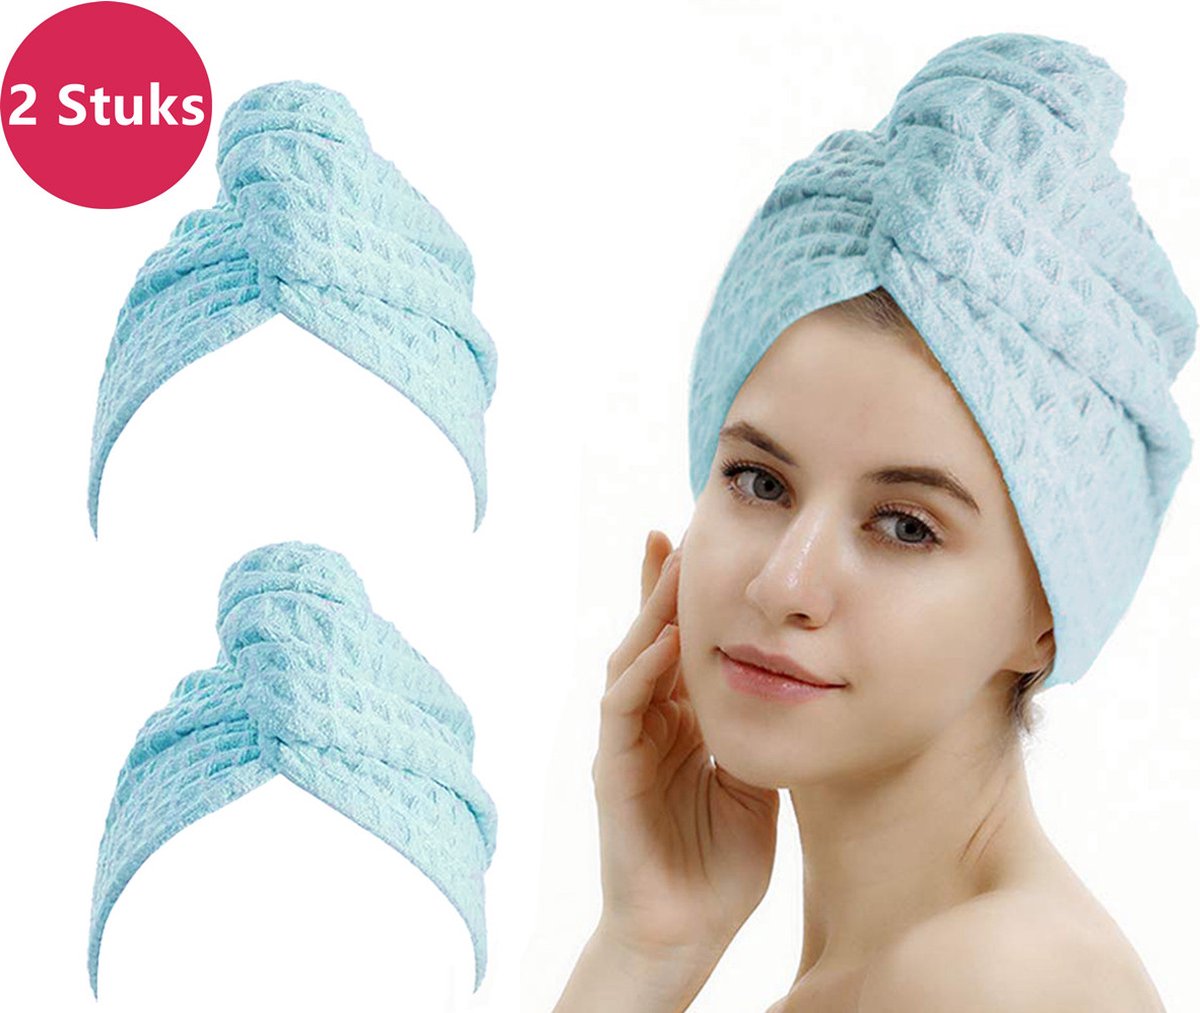 LIXIN Wafel Haarhanddoek - 2 Stuks - Ice Blue - Haar Drogen Handdoeken - Microfiber - Haar Tulband - Handdoek - Sneldrogend - Premium Fabric - Super Absorberend - Zachte stof - Haar Cap - Haaraccessoires